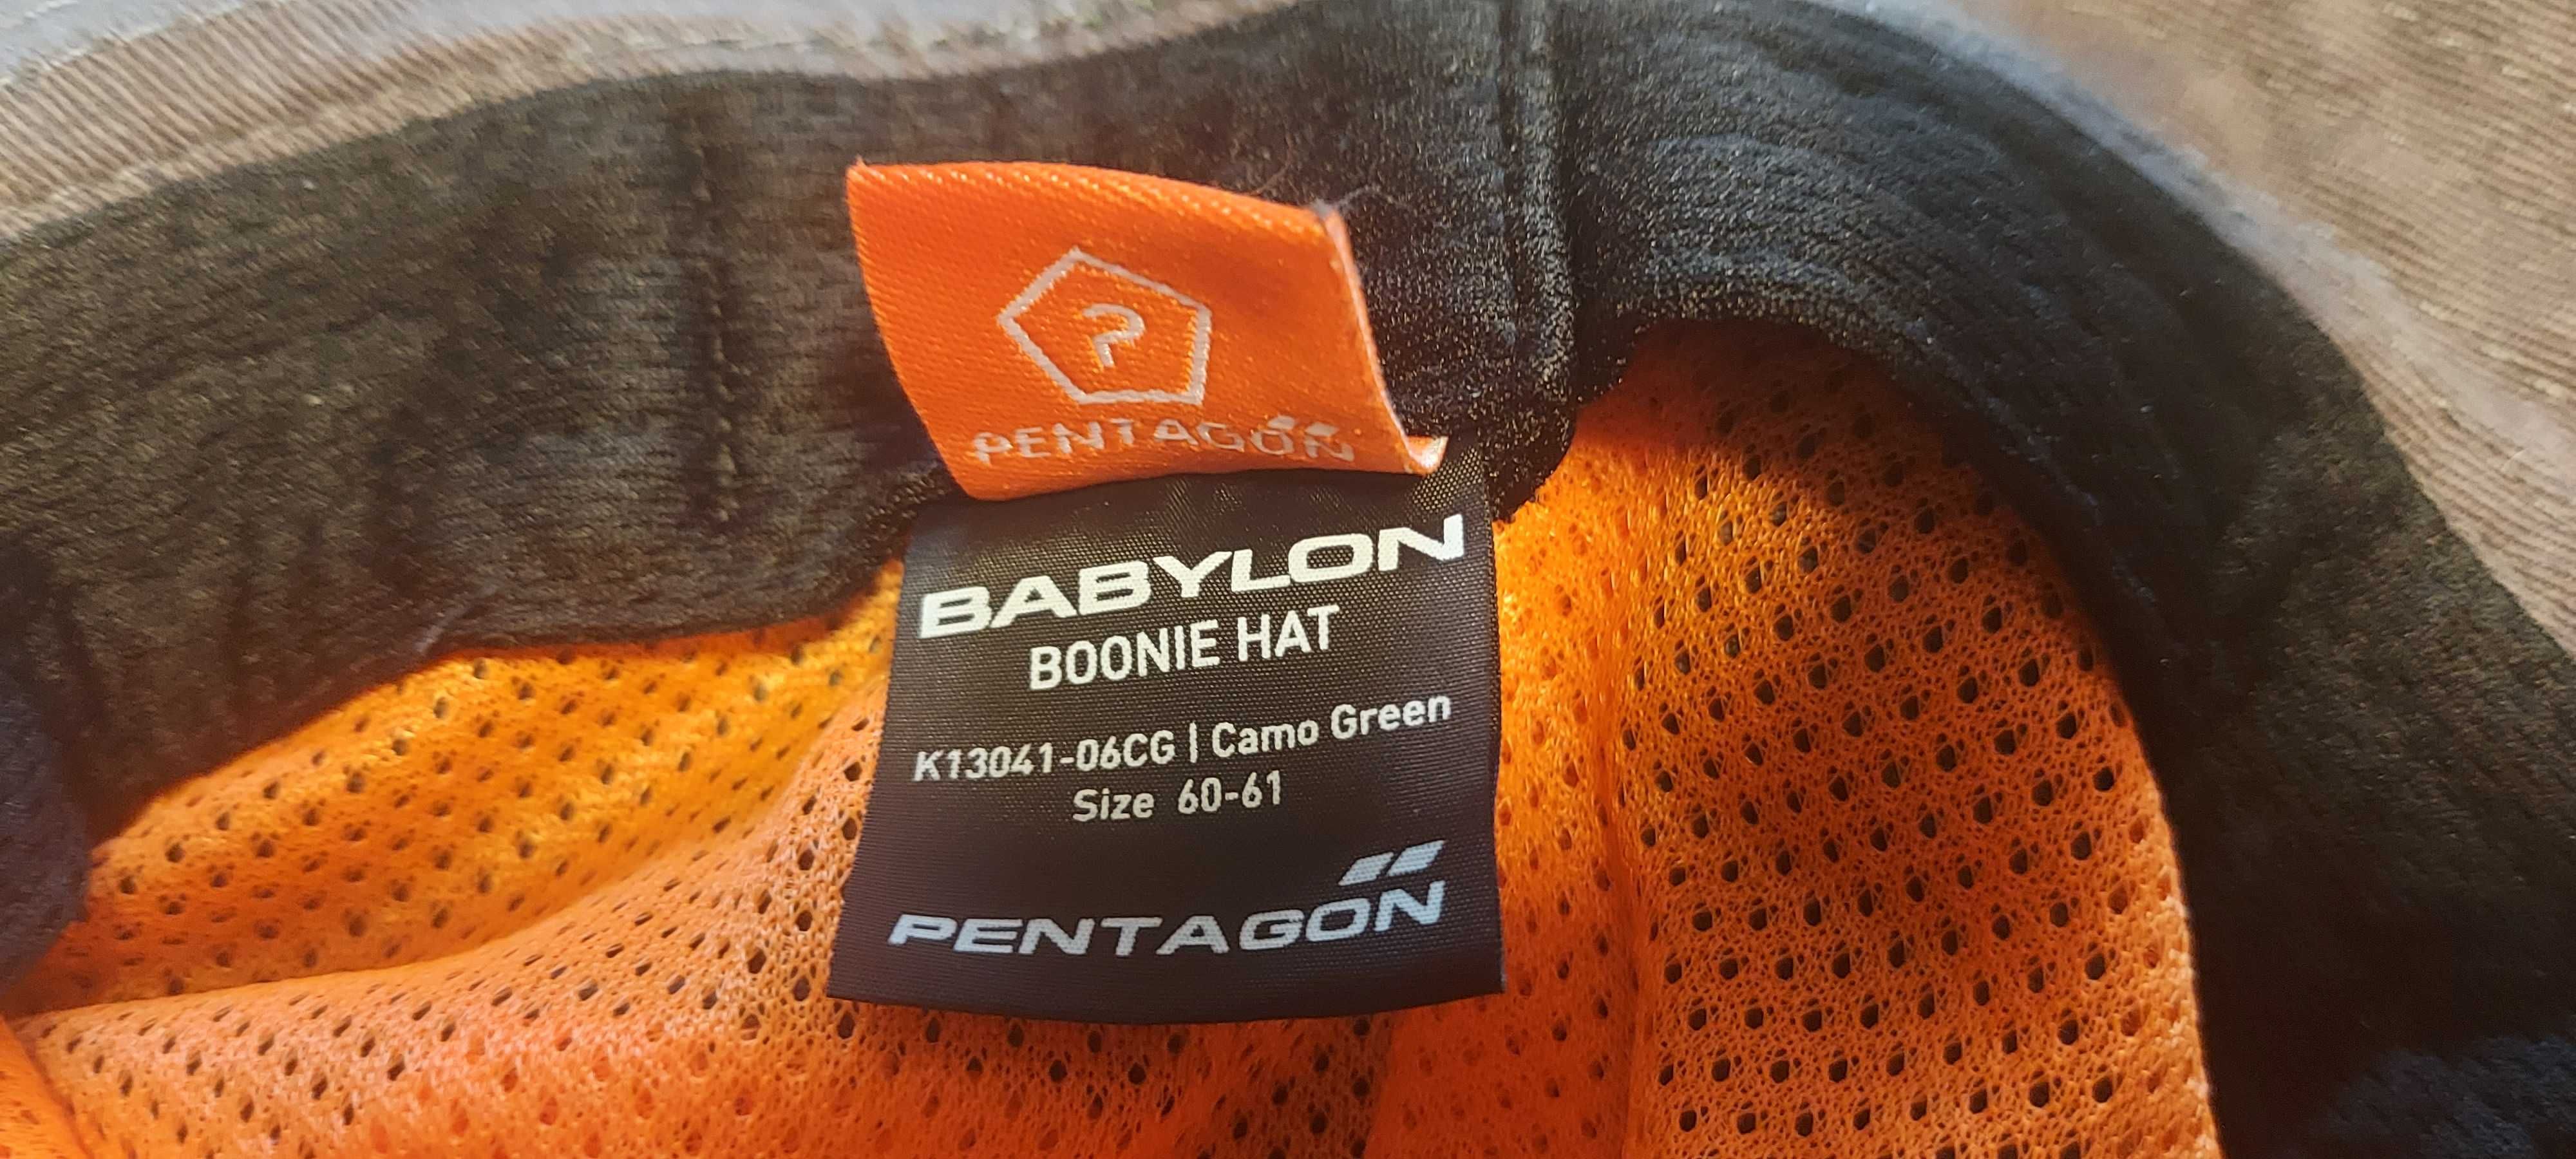 Boonie Hat Babylon Pentagon